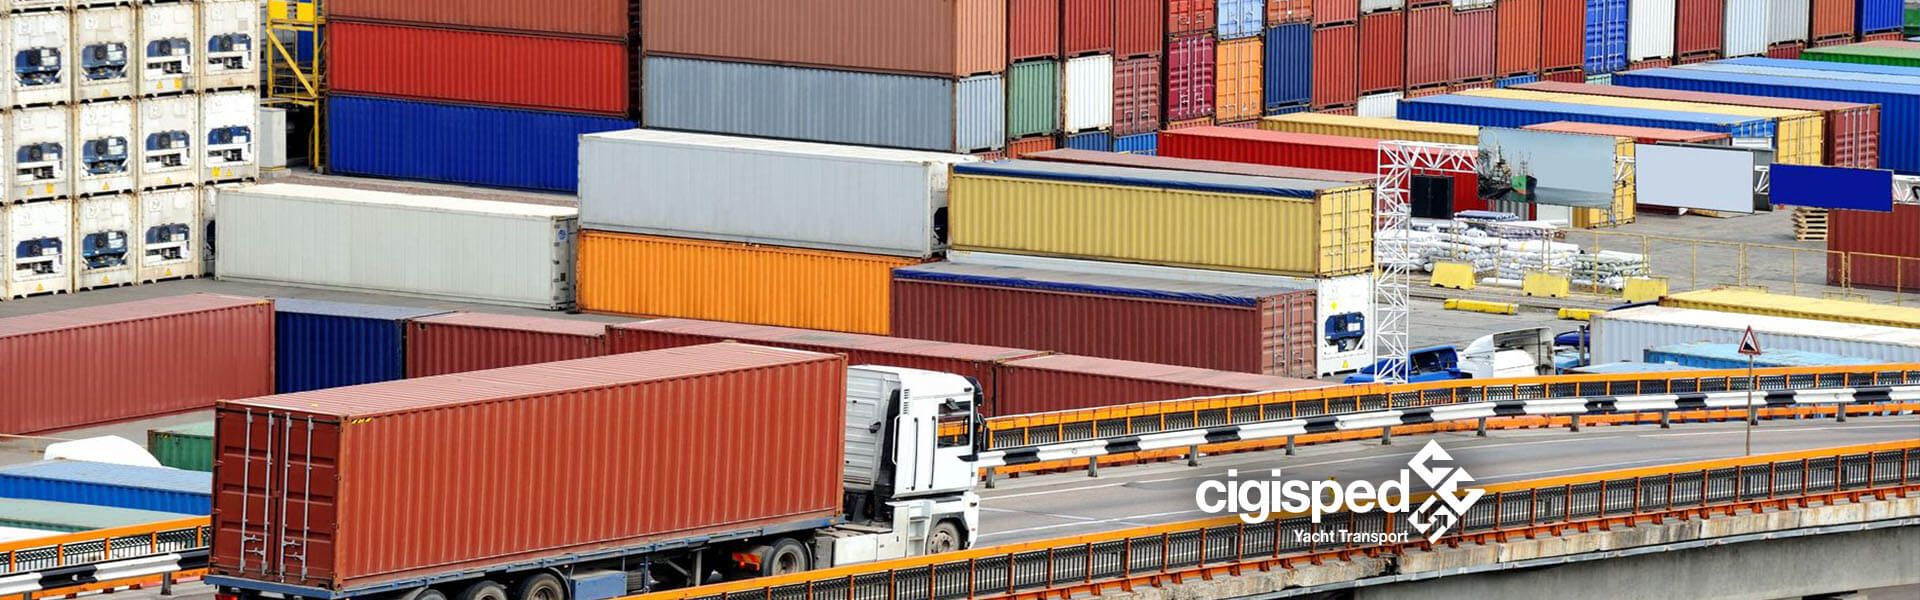 Cigisped transport logistique intégrée conteneurs service stockage assistance 